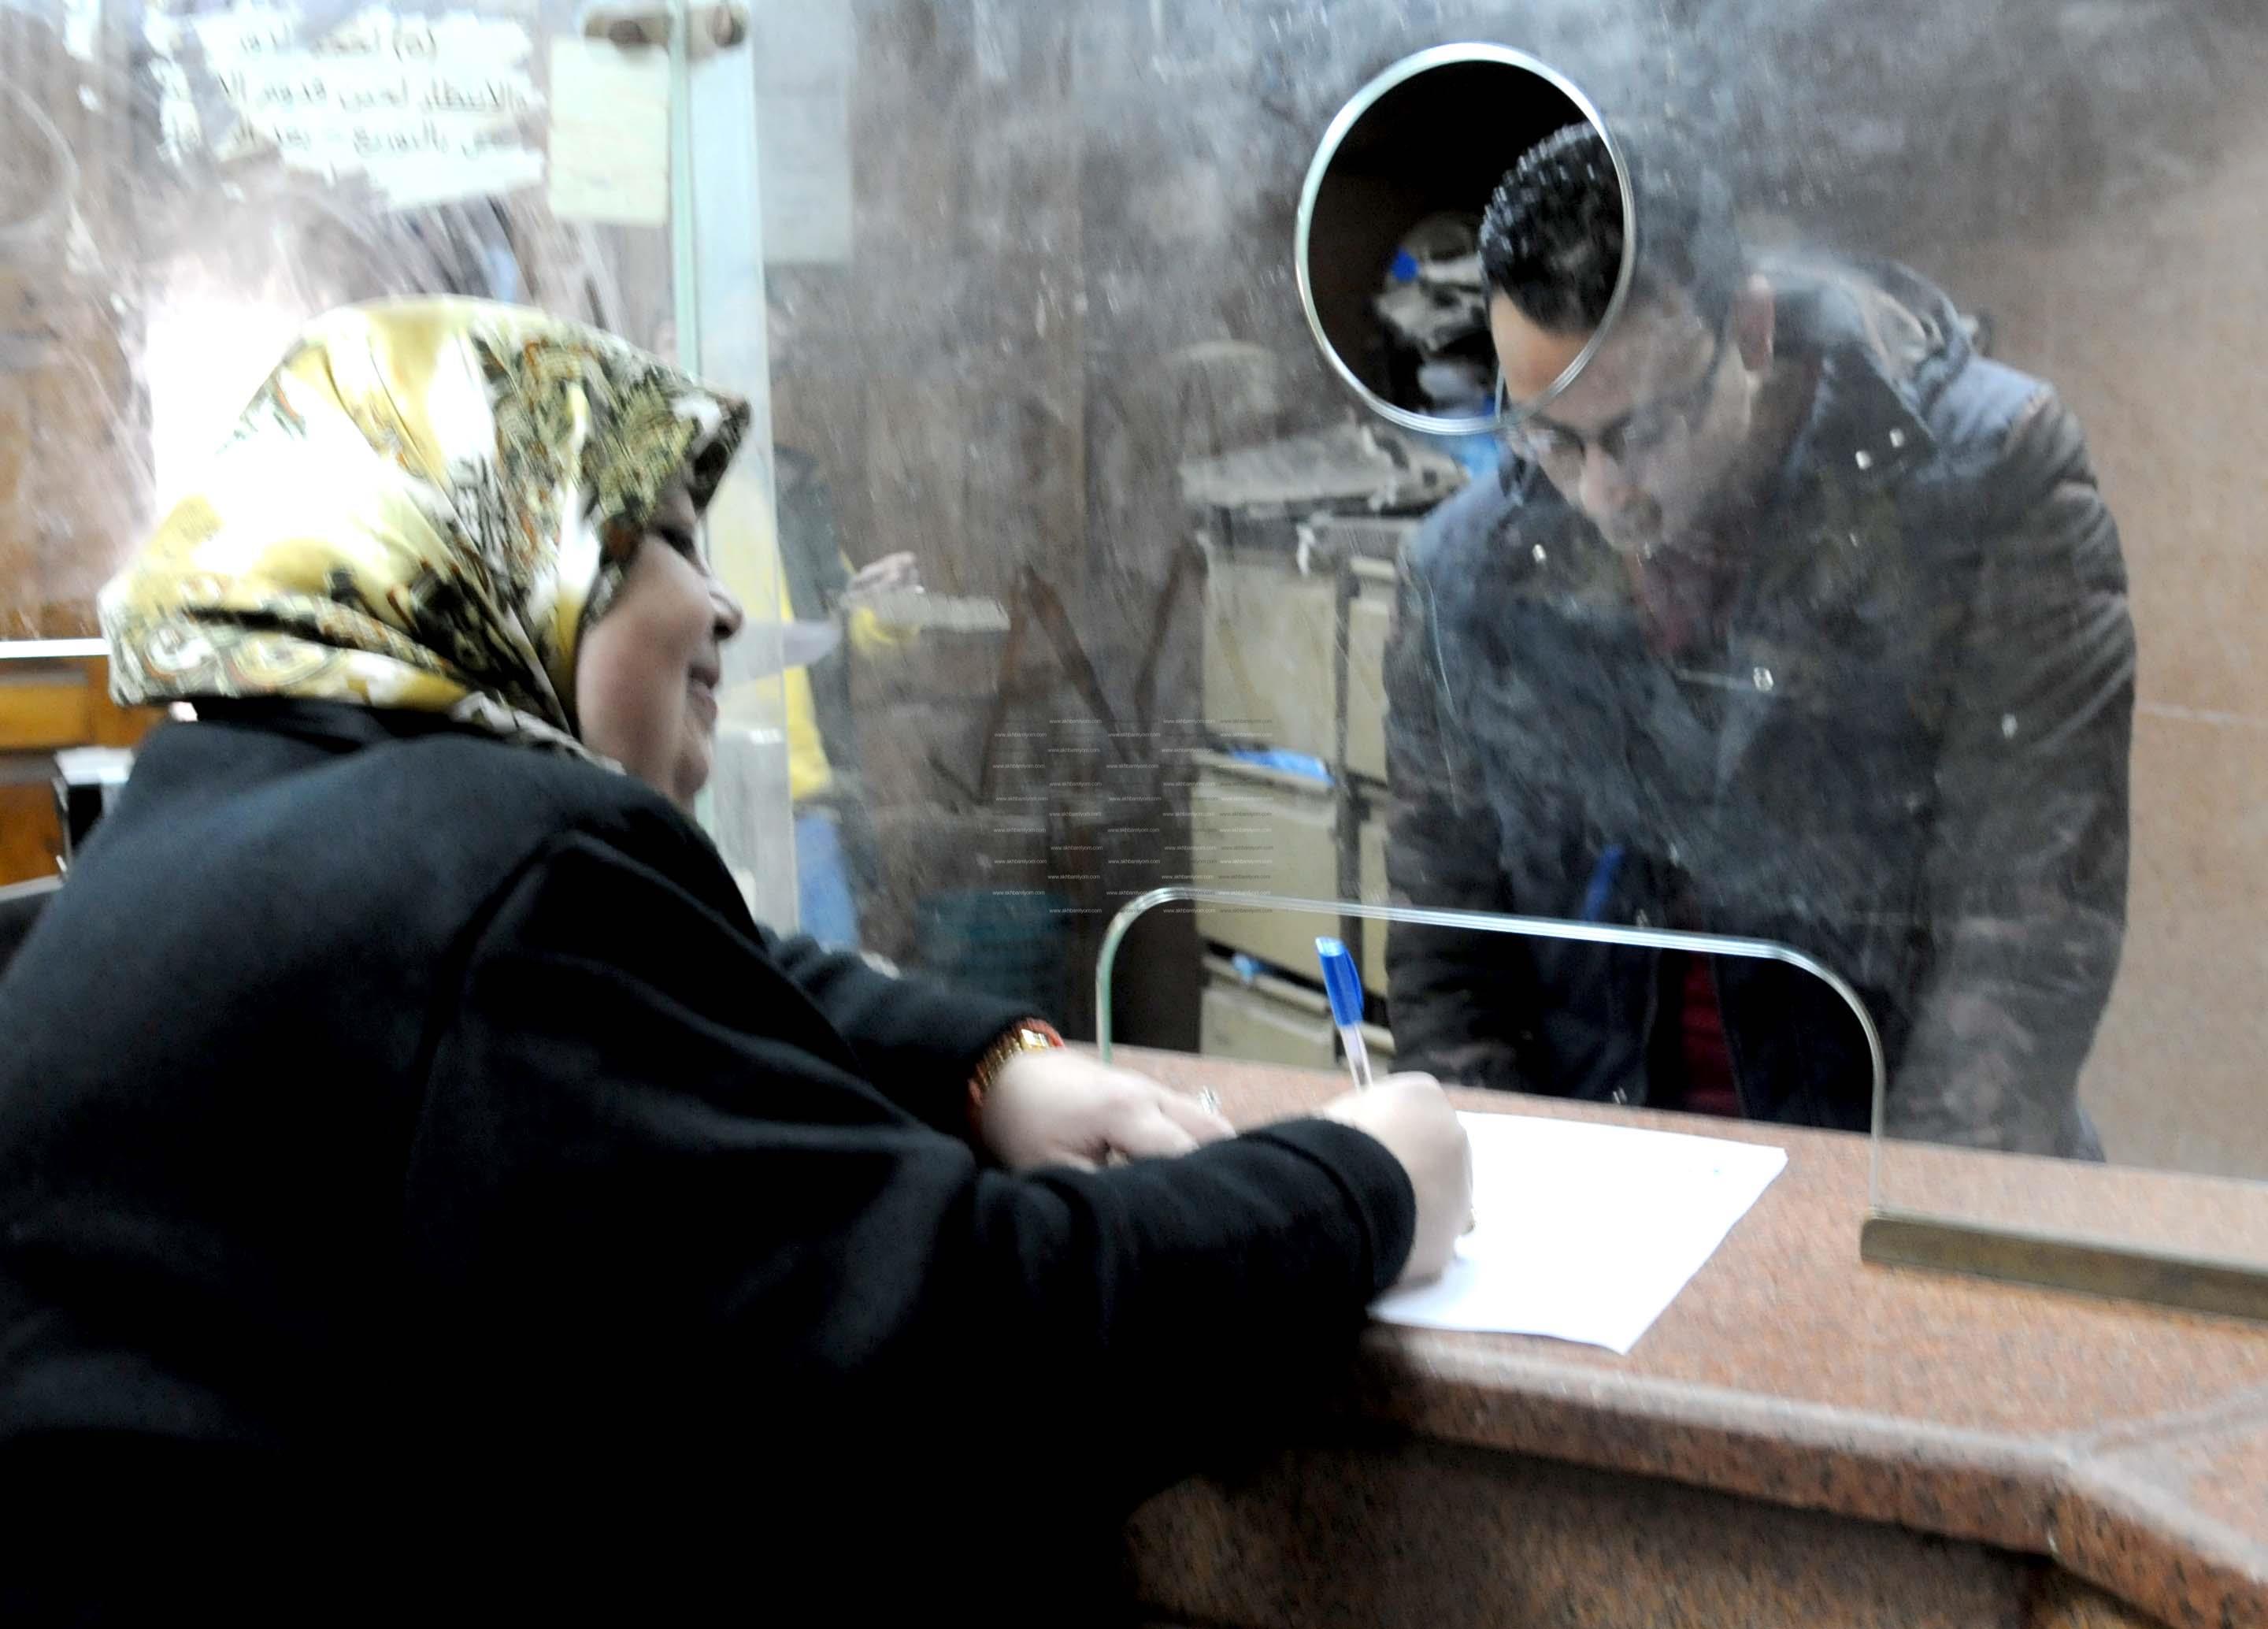 مواطنة توقع نموذج تأييد لترشيح الرئيس عبد الفتاح السيسي في مكتب الشهر العقاري بالإسكندرية